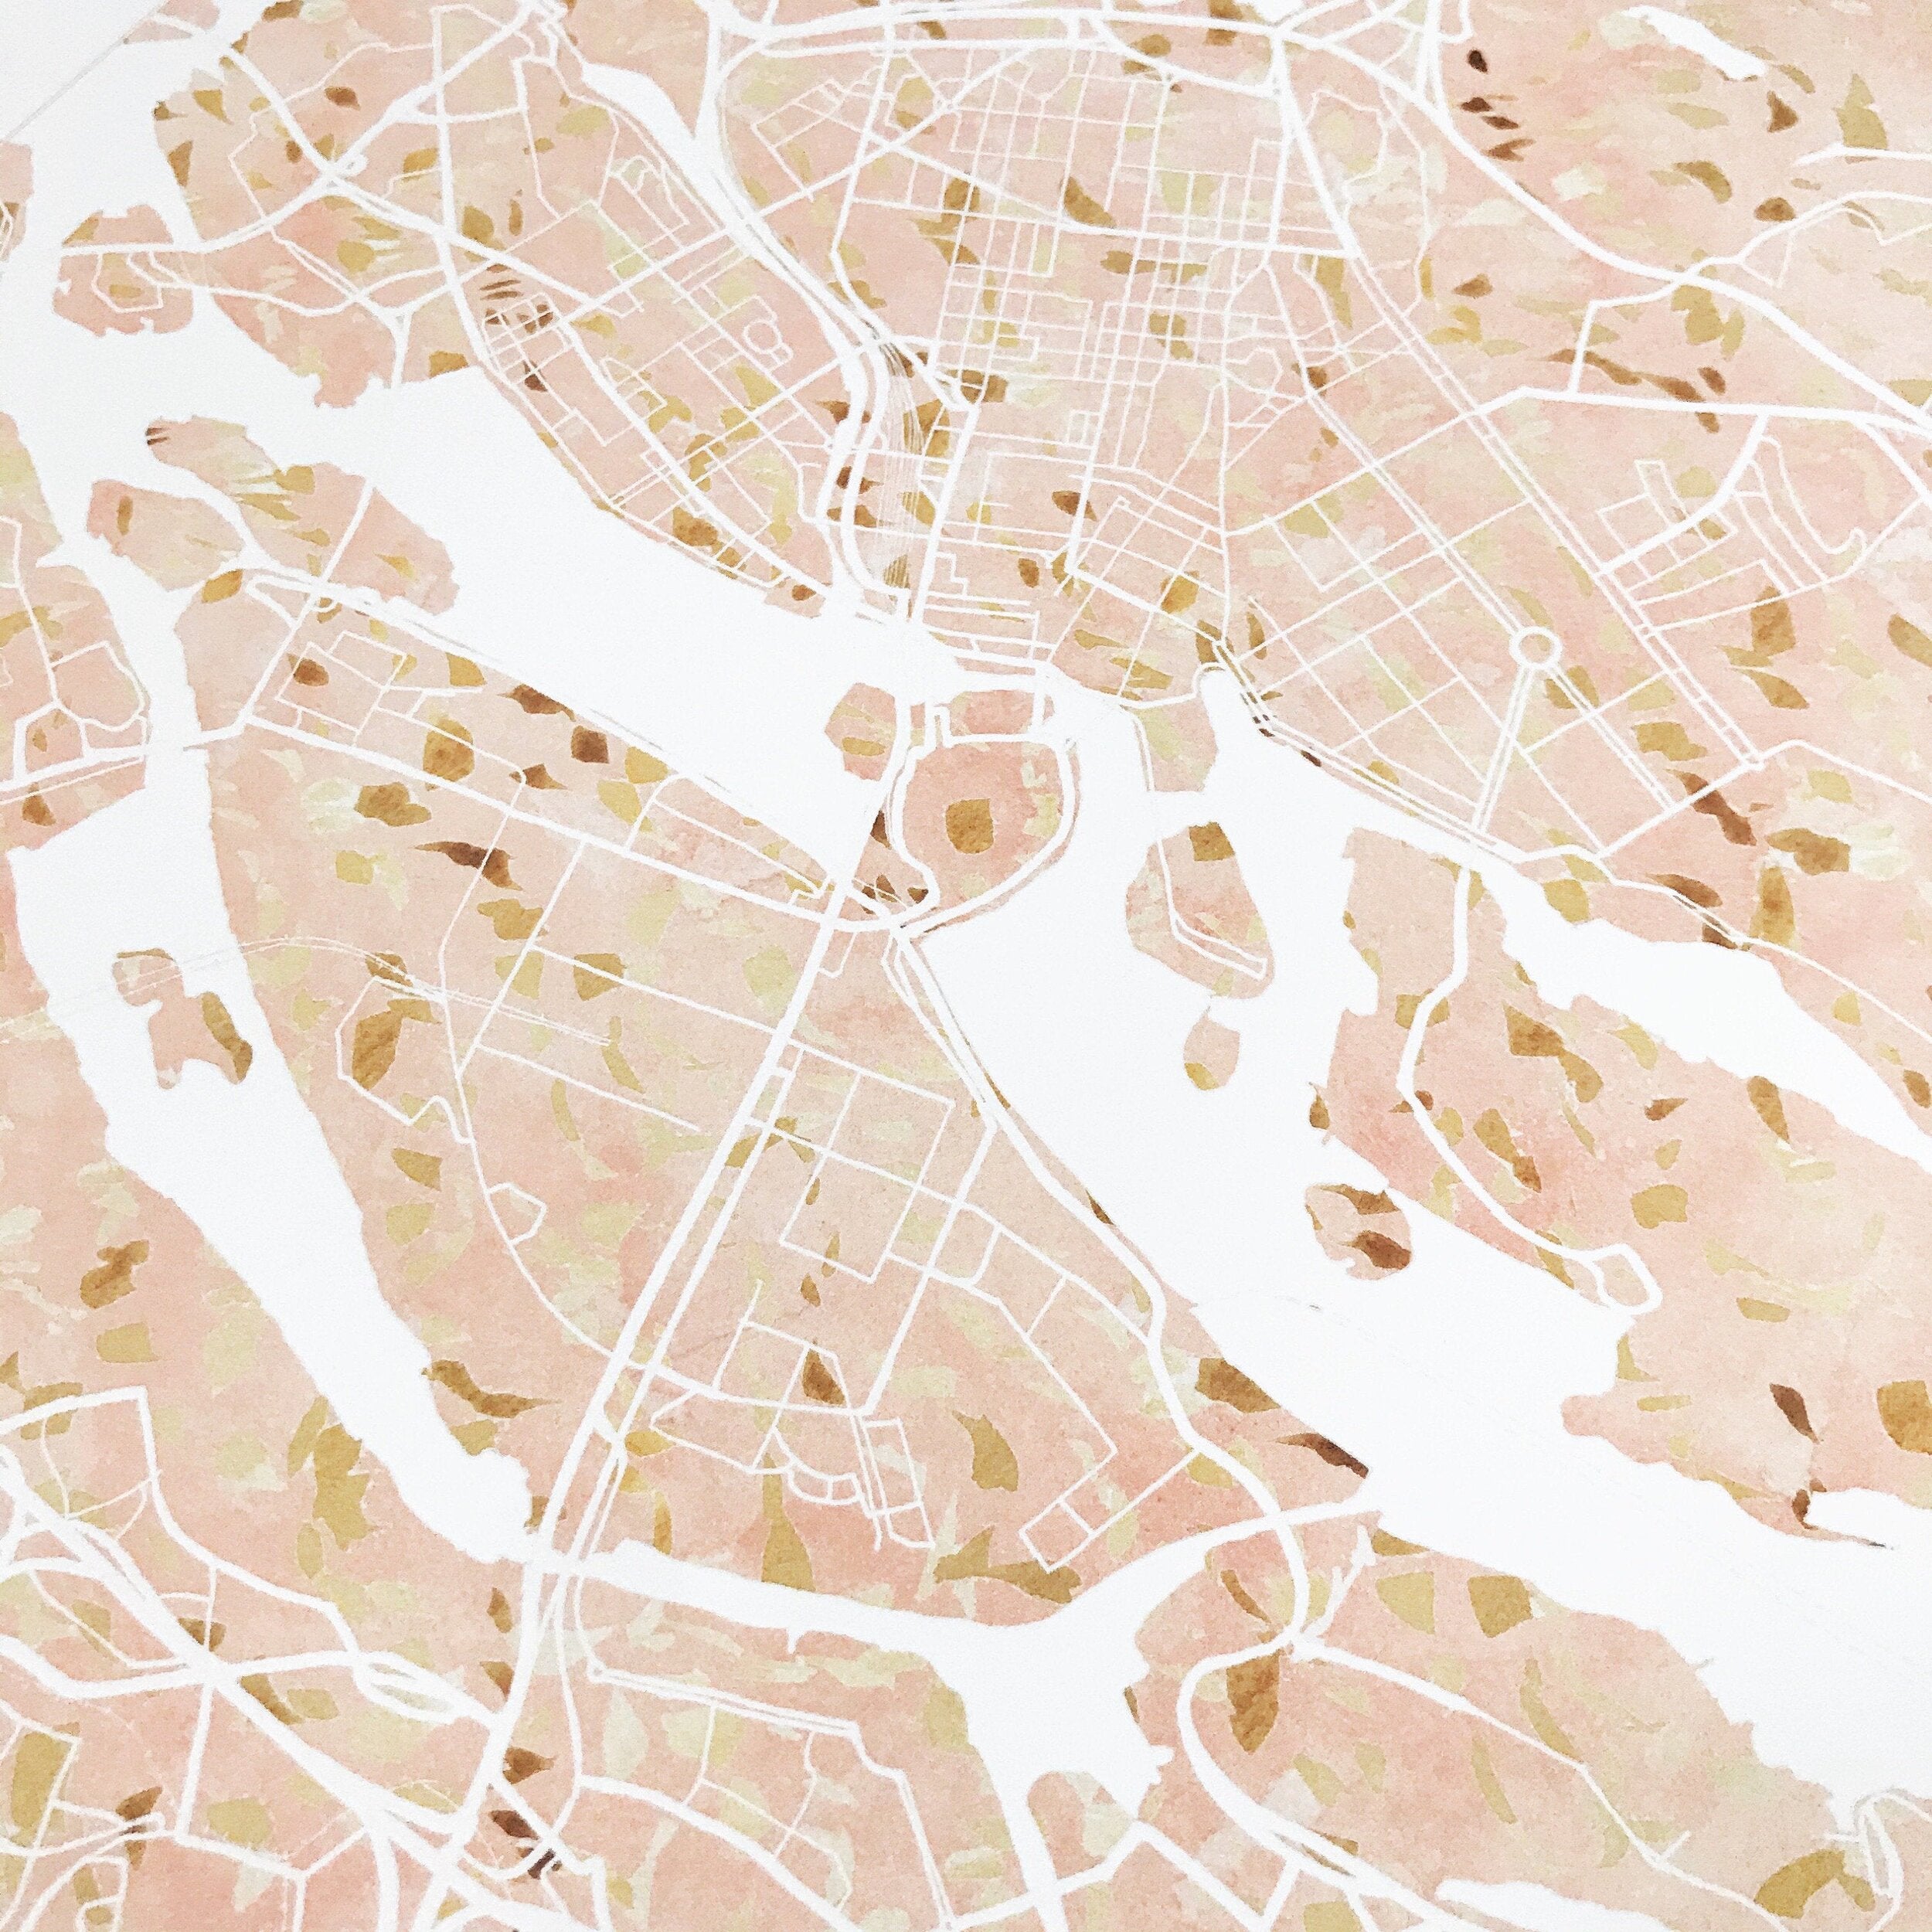 STOCKHOLM Watercolor City Blocks Map: PRINT